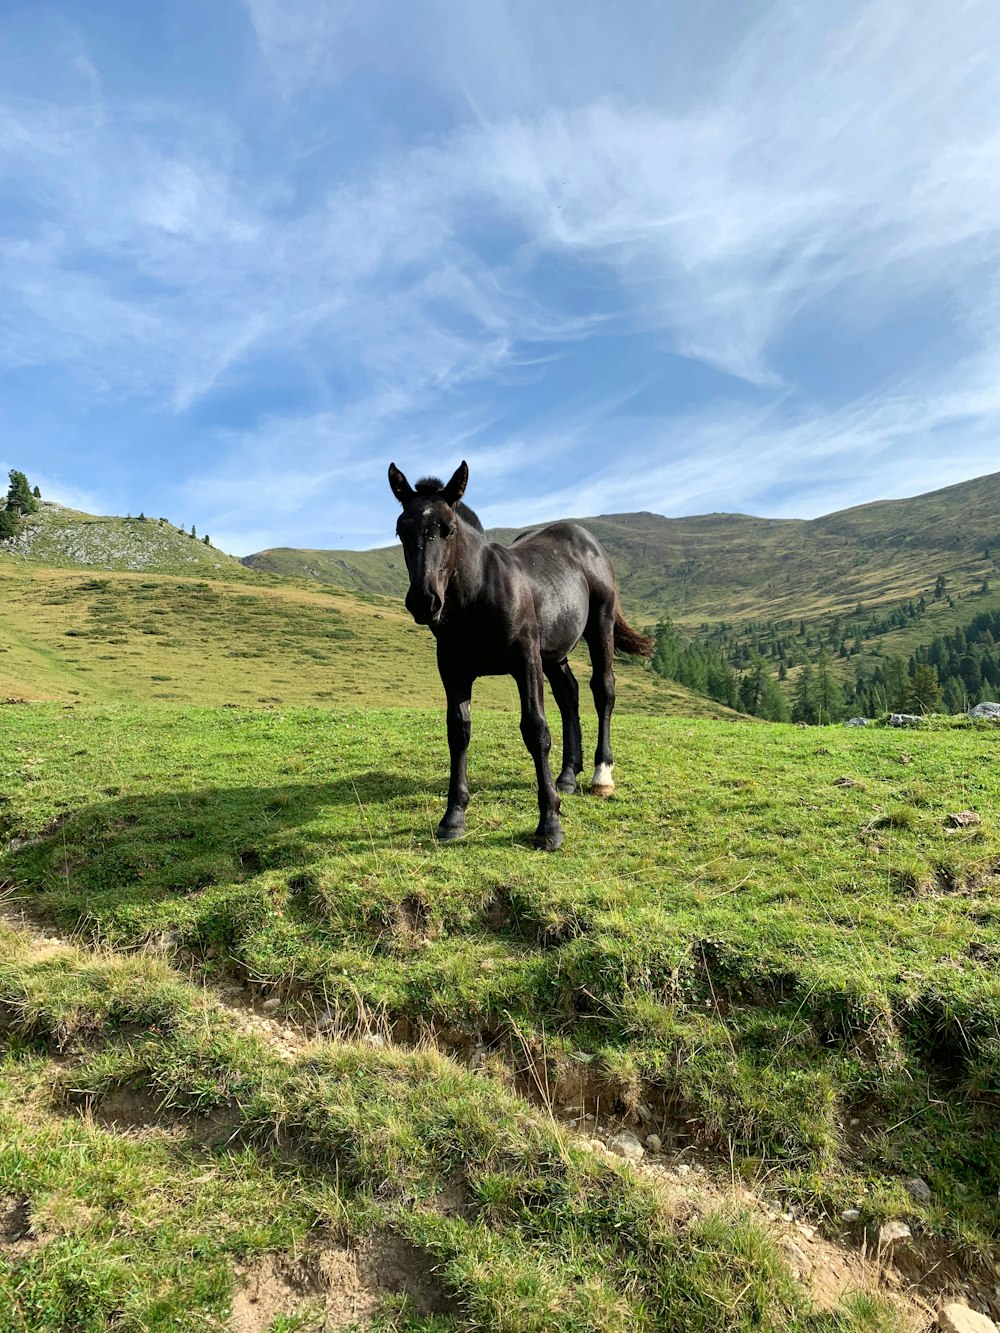 昼間の緑の芝生の野原に黒い馬